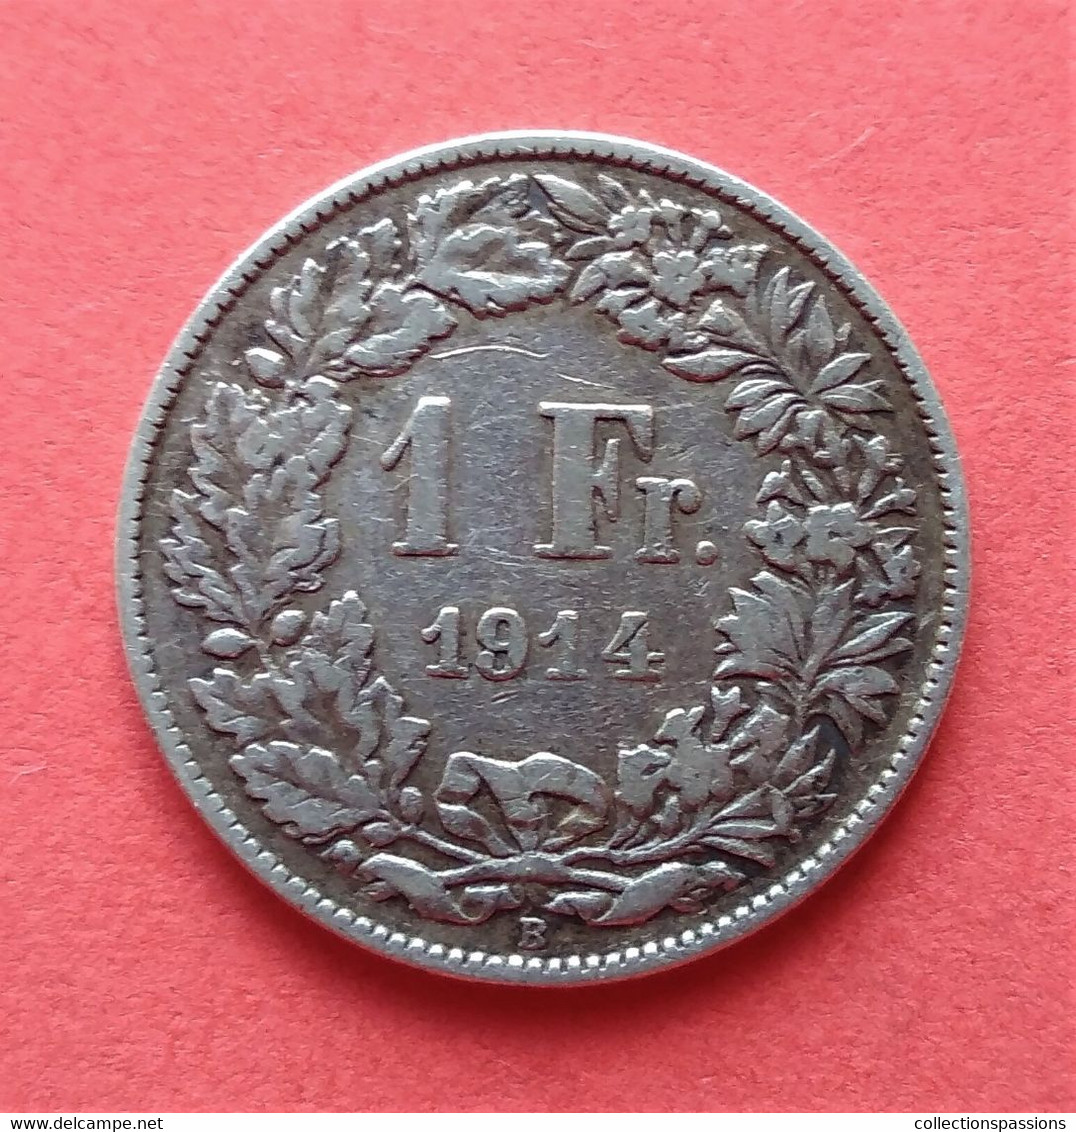 - SUISSE - 1 Franc - 1914 - Argent - - 1 Franken